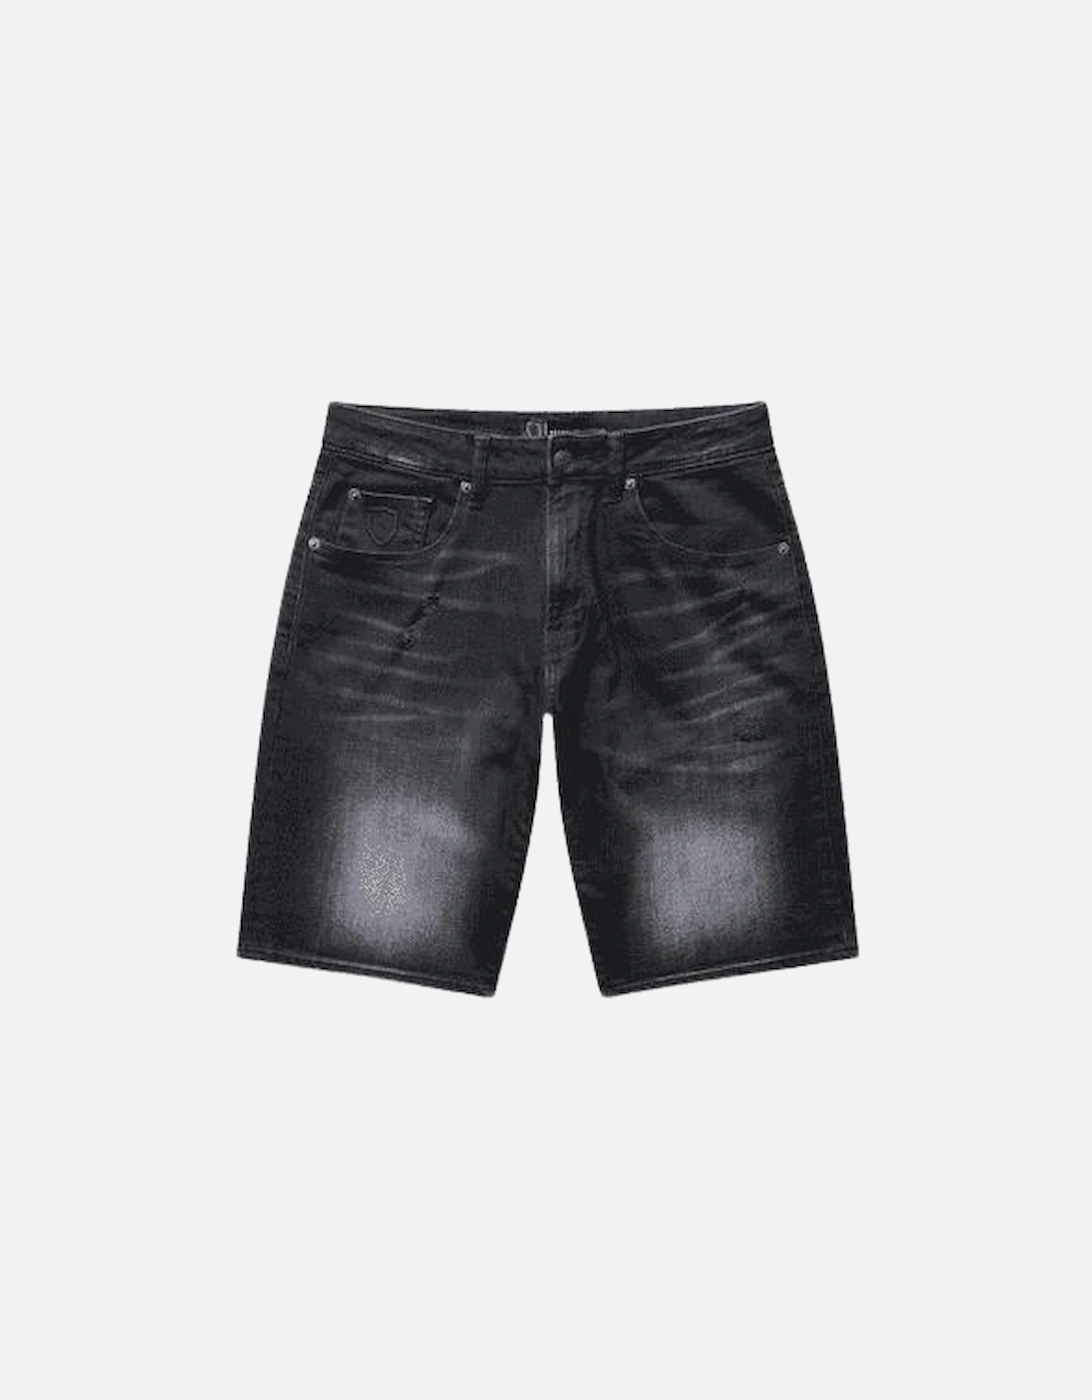 Sentiero Grey Wash Denim Shorts, 5 of 4